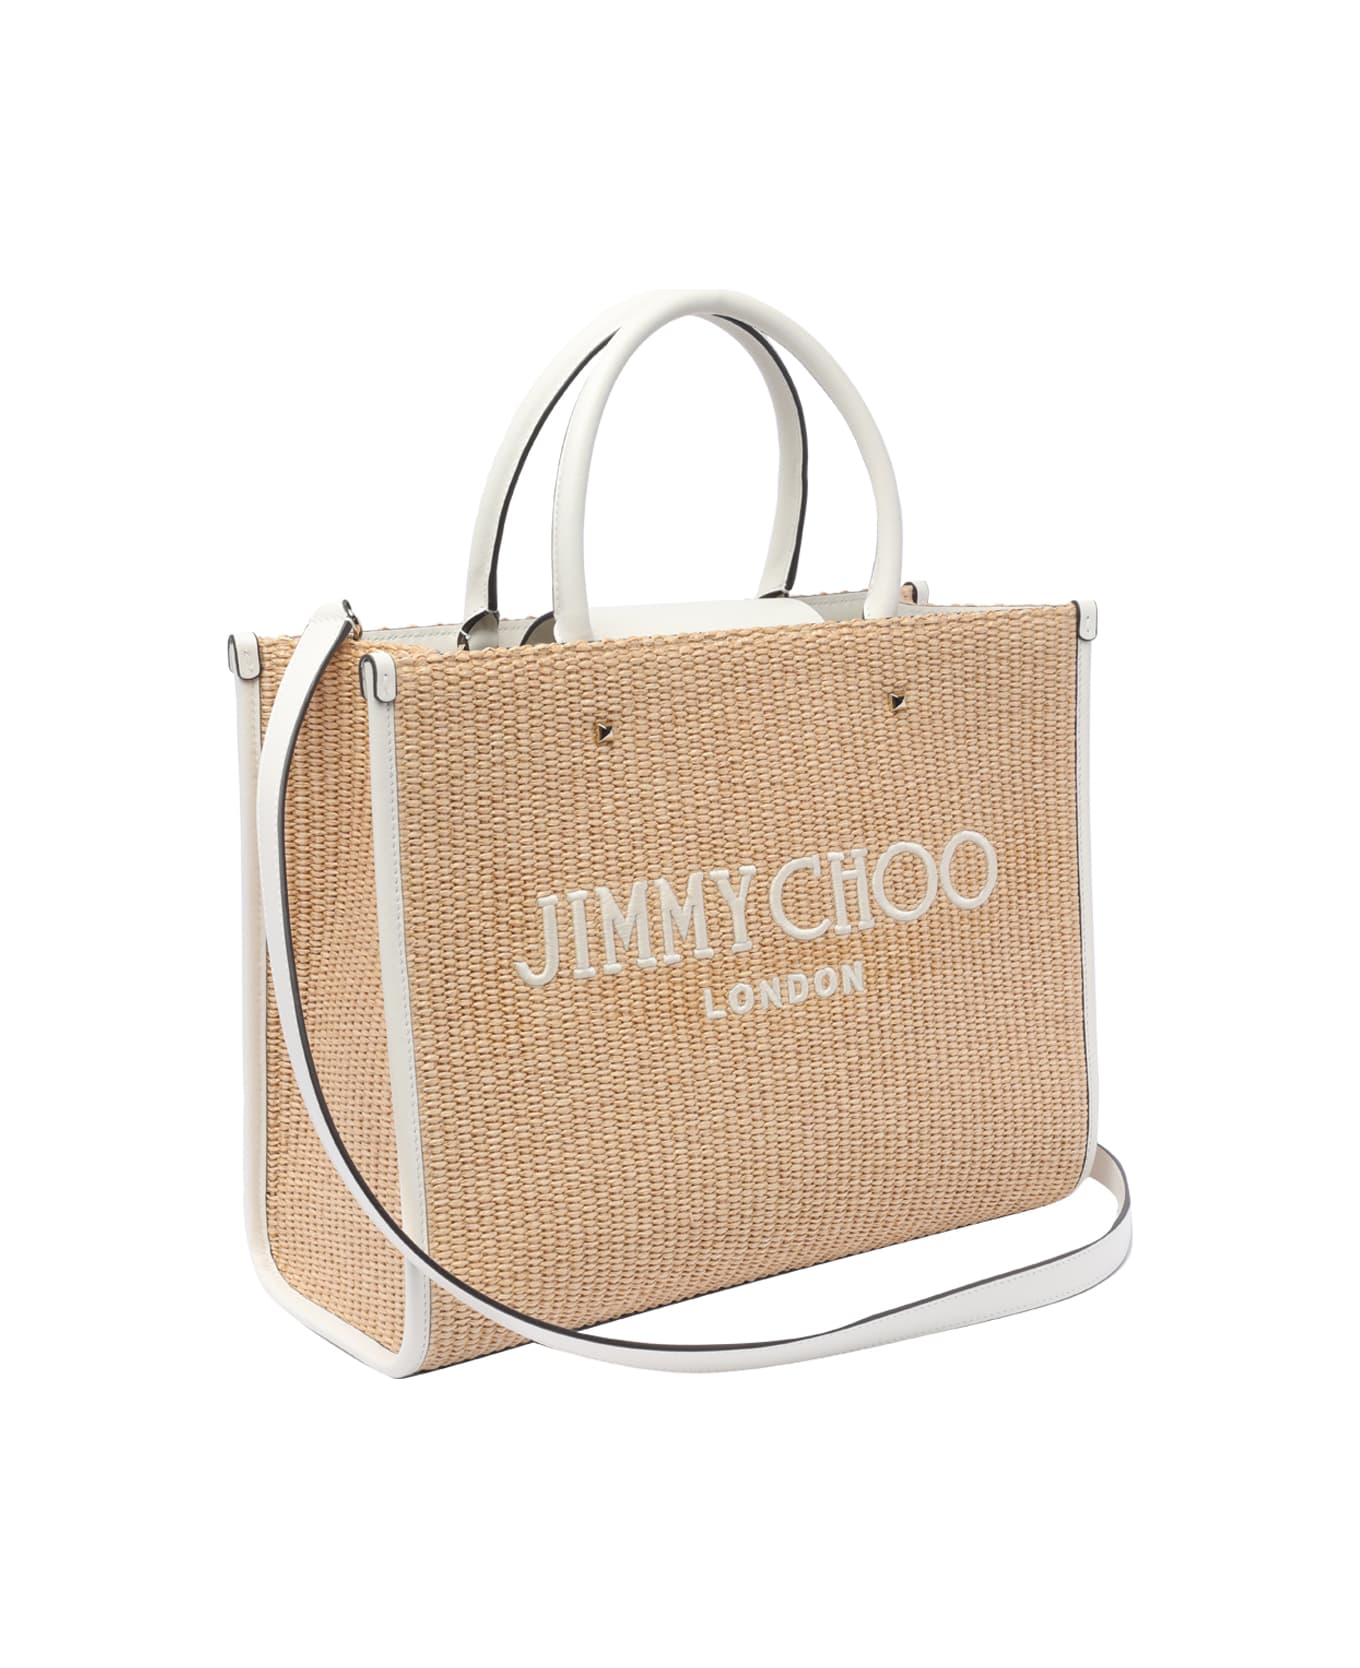 Jimmy Choo Avenue Tote Bag - Beige